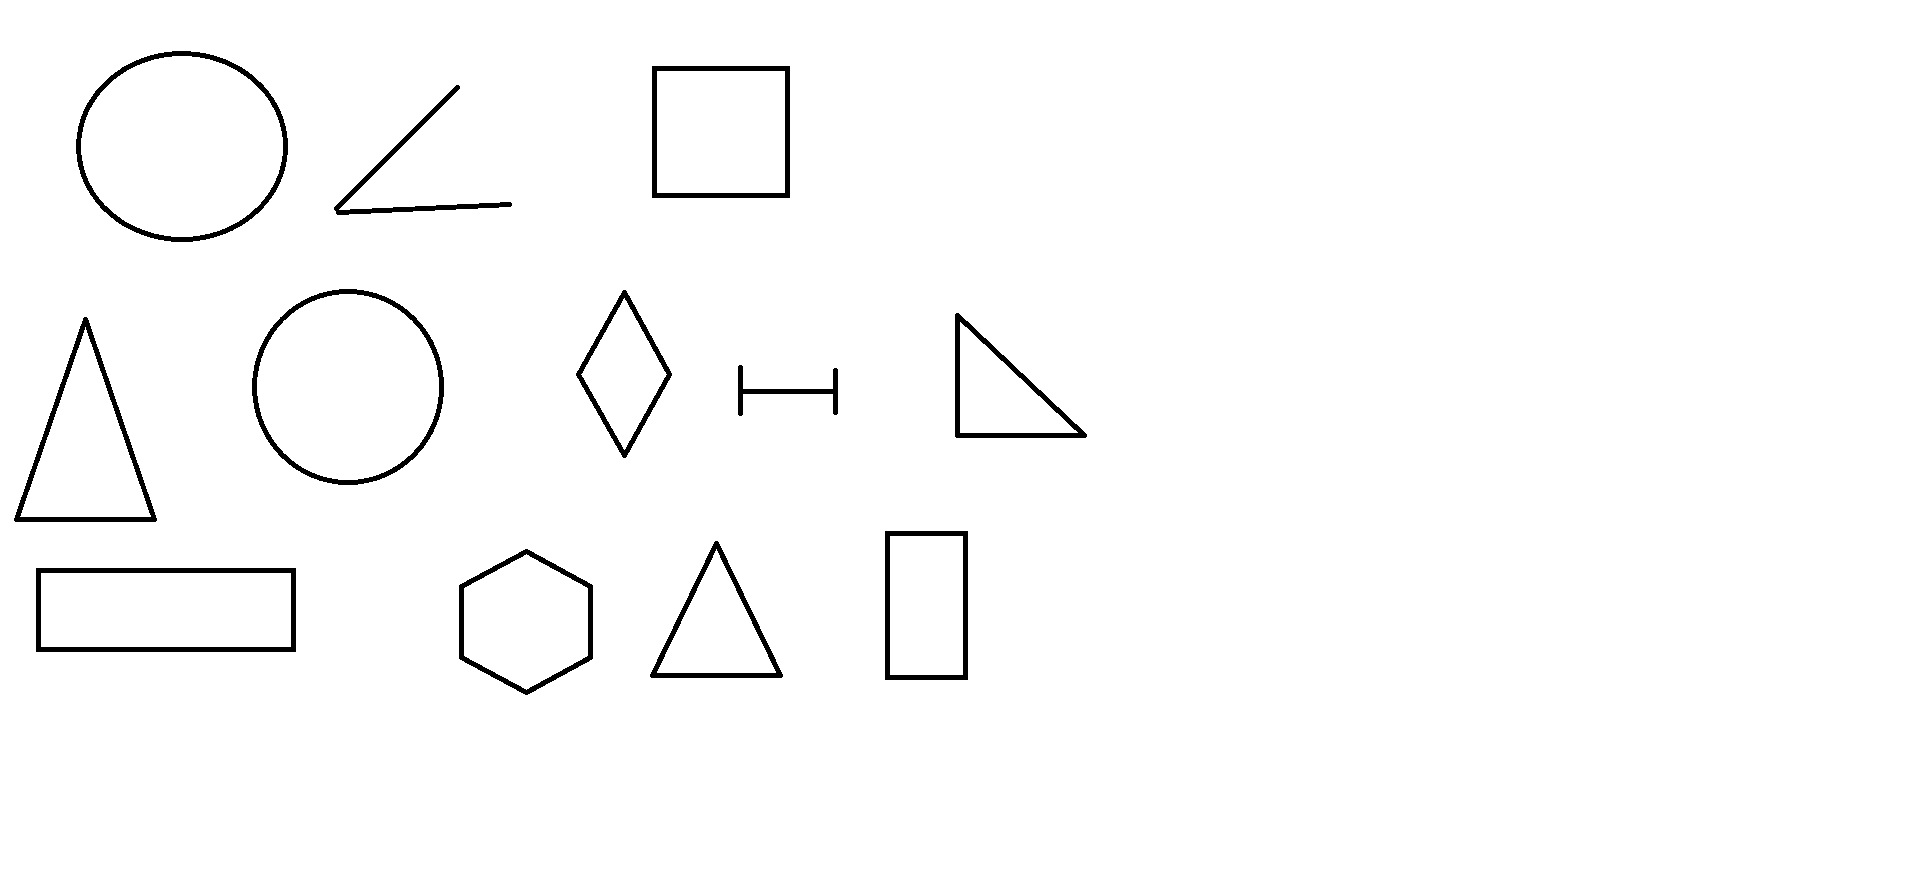 Конспект урока 1 класс коррекционная школа. Игра по геометрии для 9 класса коррекционной школы. Игра что лишнее геометрические фигуры старшая группа. Назови лишнее Эрудит 8. Найди пару фигурок из который можно собрать прямоугольник.